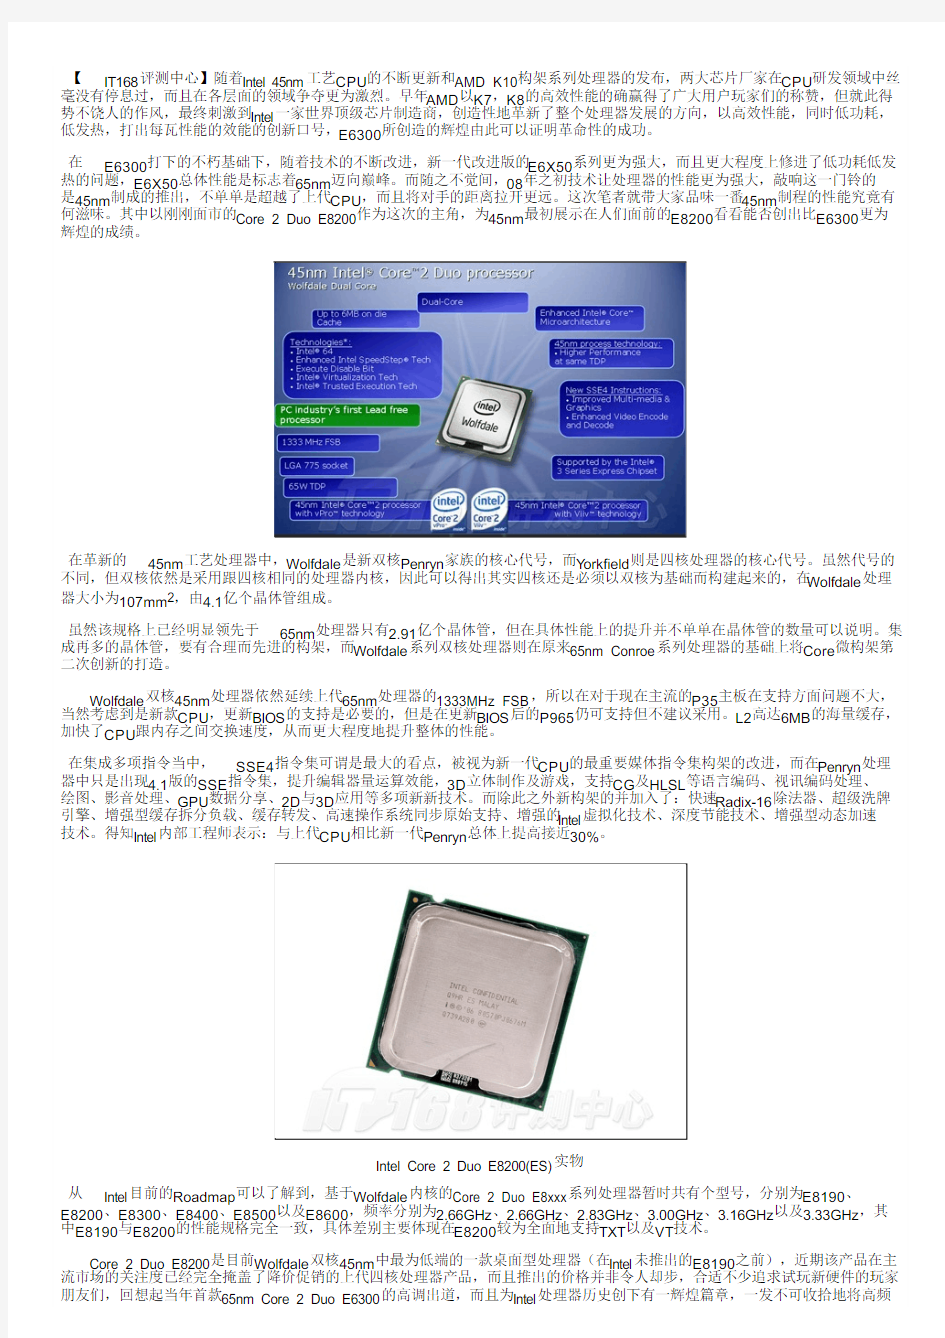 6系列惨遭淘汰新酷睿E8200处理器详测_IT168